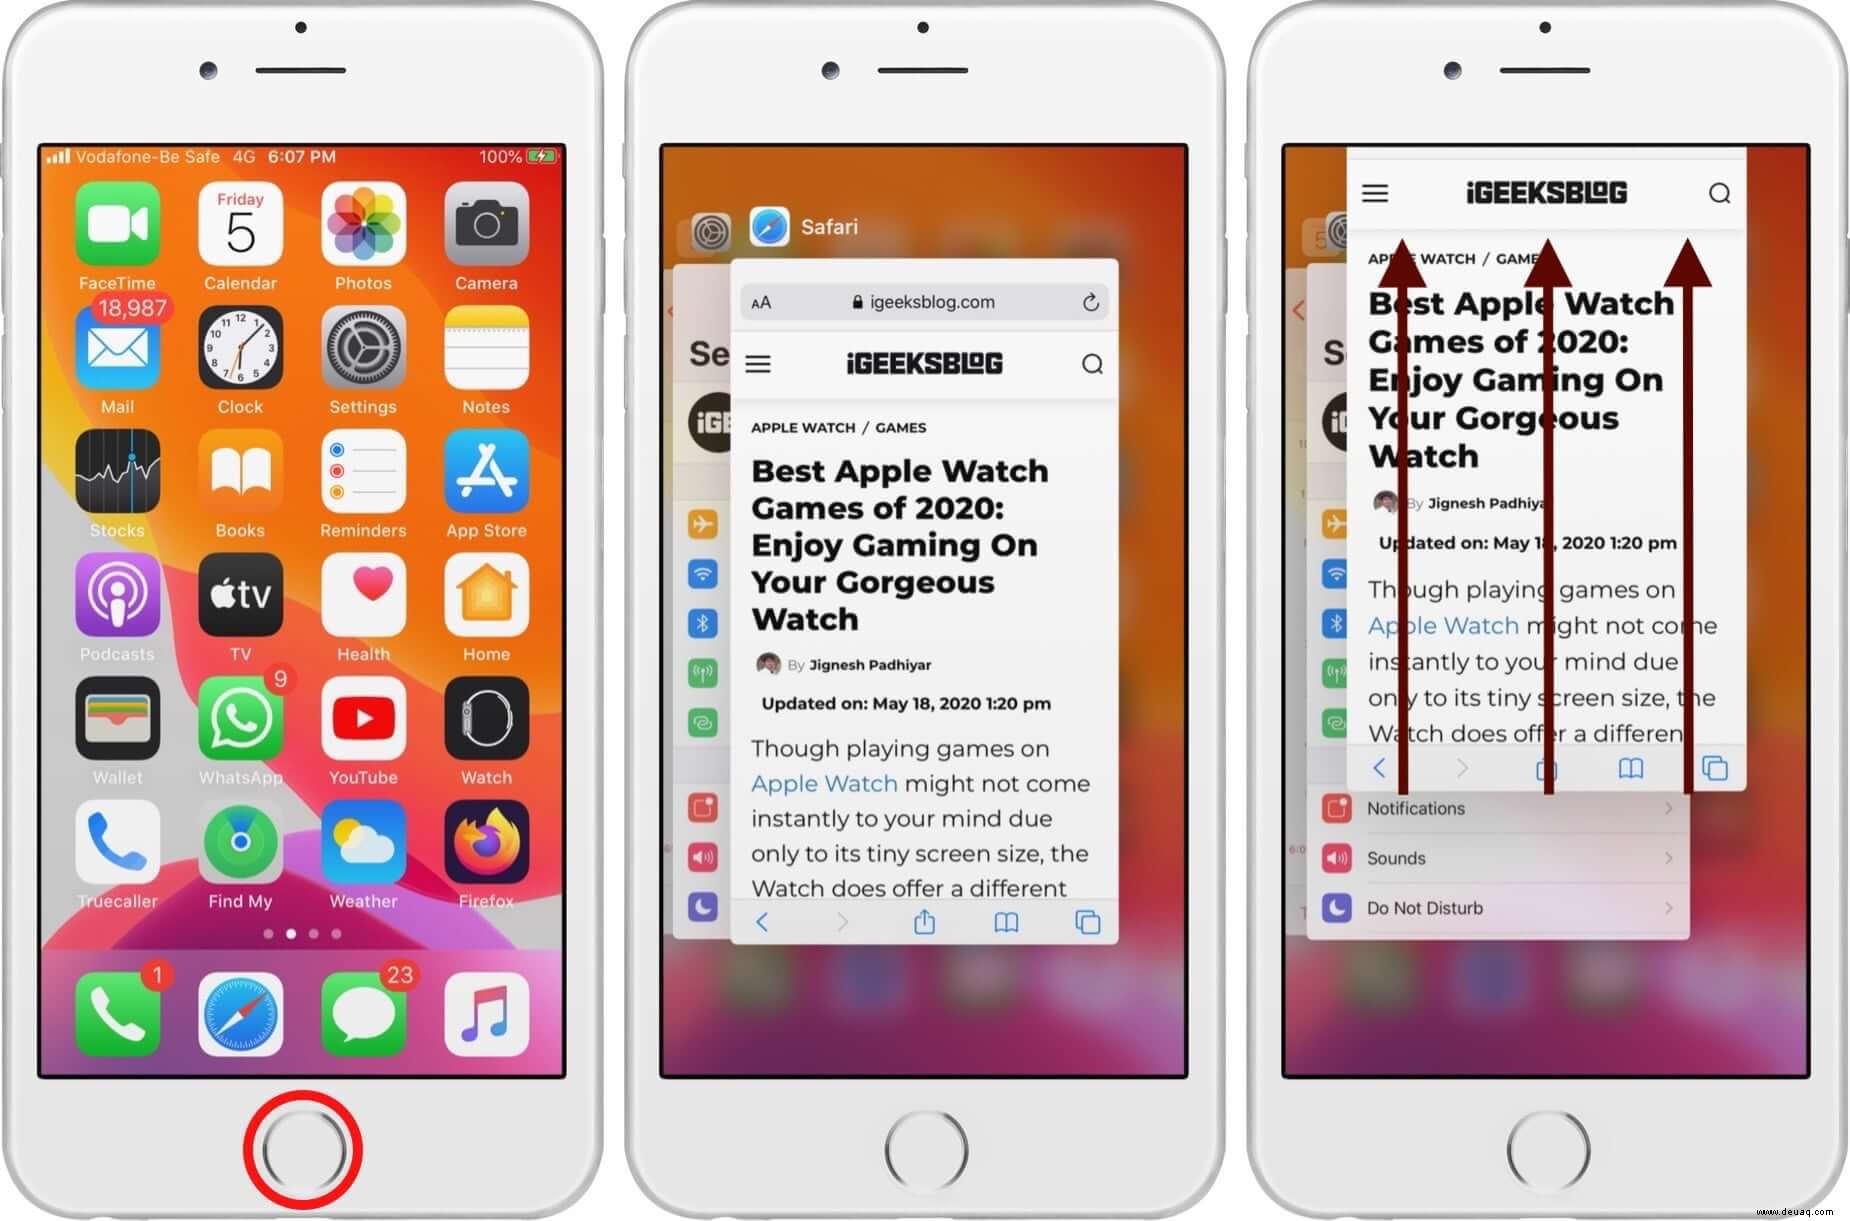 Safari langsam auf iPhone und iPad? Hier sind 8 Lösungen, um es zu beheben 